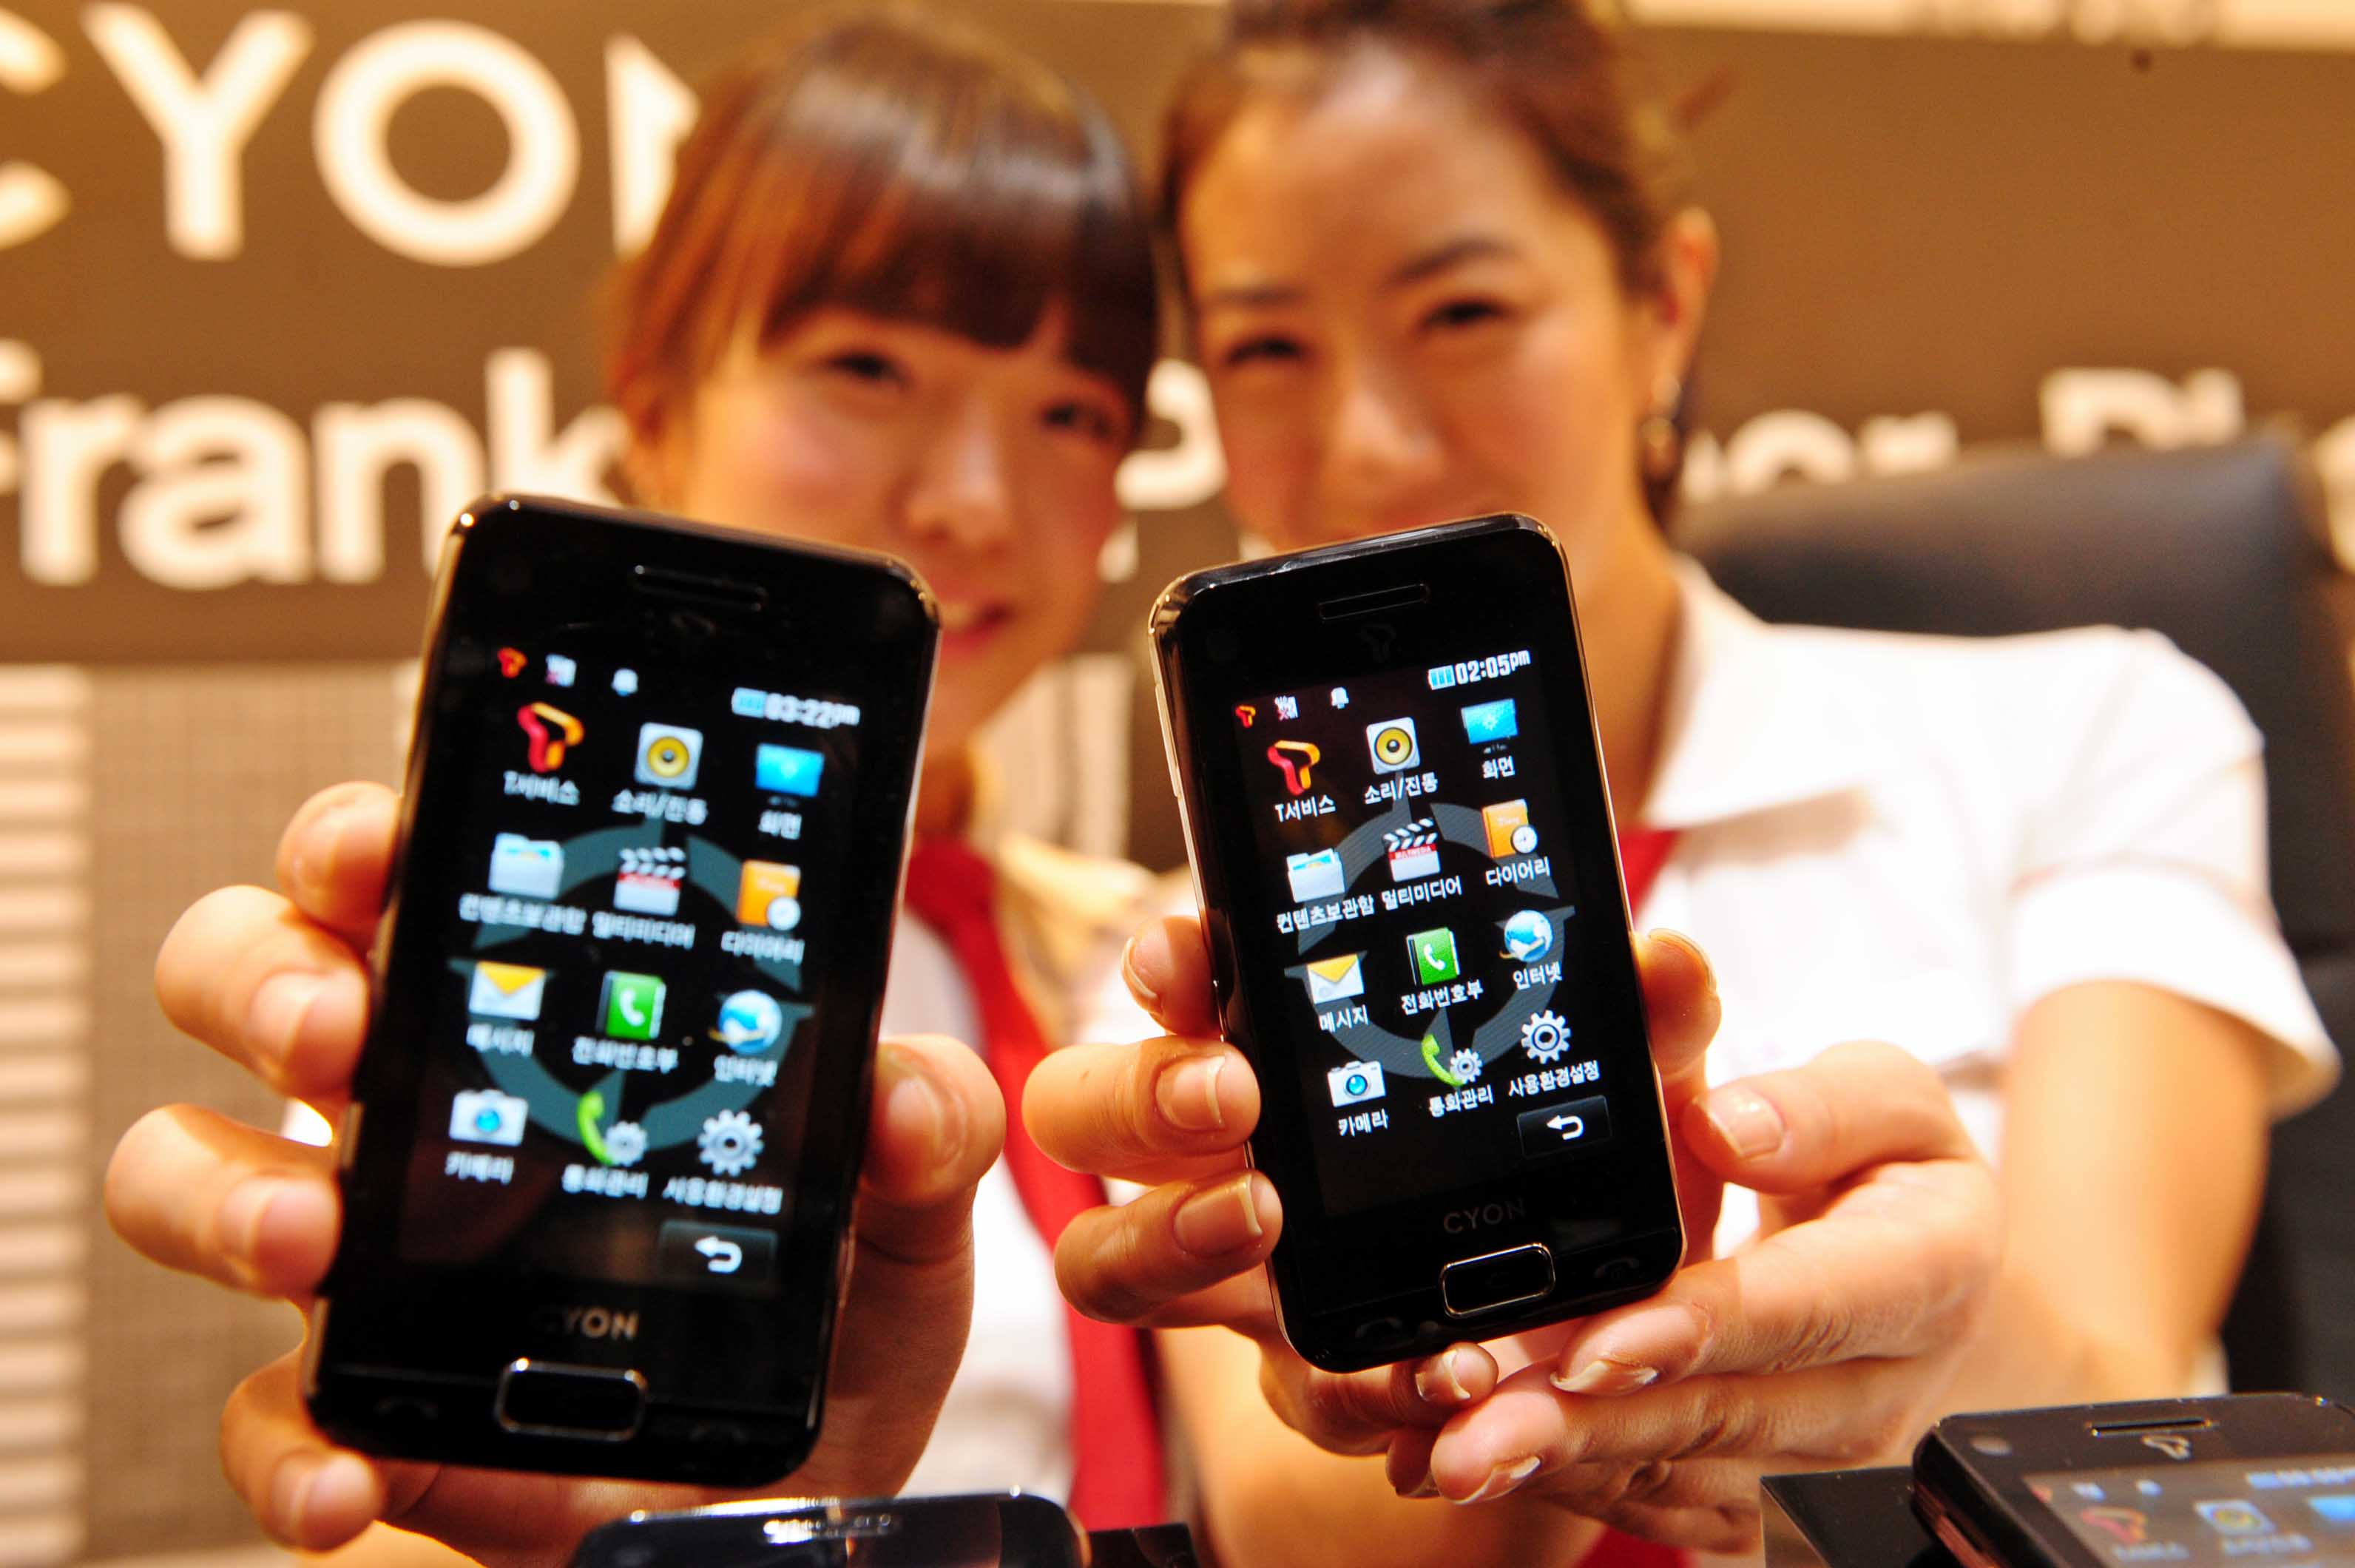 LG전자의 휴대전화 신제품인 프랭클린플래너폰 발표회가 3일 서울 여의도 LG트윈타워에서 열렸다. 이 제품은 유선은 물론 블루투스(단거리 무선통신)를 통해서도 PC와 연계해 편리하게 일정을 관리할 수 있다. [뉴시스]